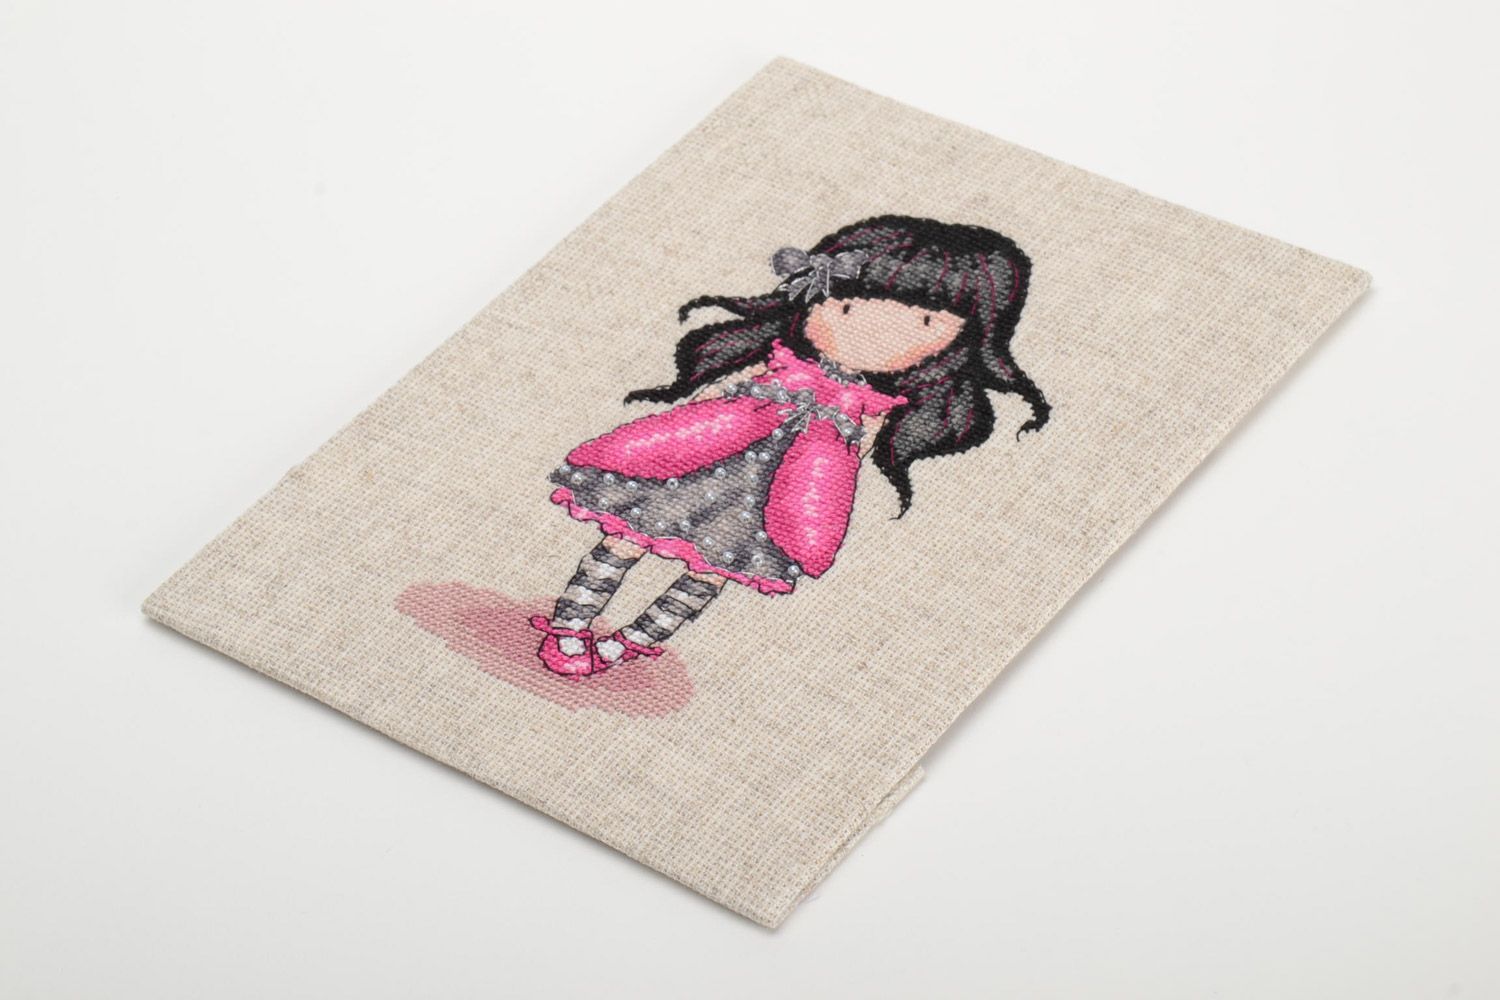 Картина вышитая нитками мулине и бисером на льняной основе Девочка в платье фото 5